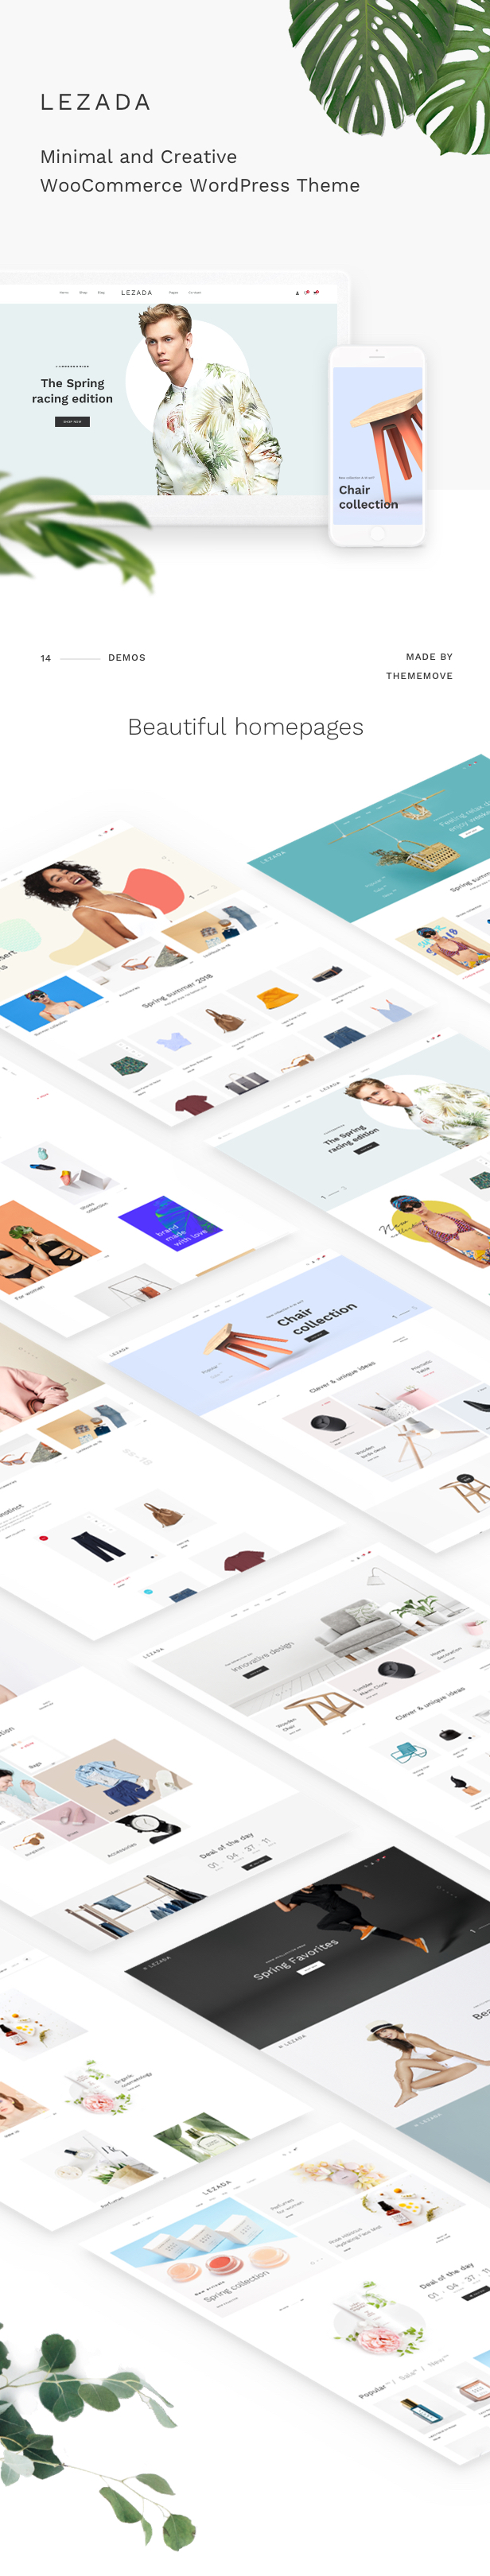 Fashion WooCommerce WordPress Theme: páginas de inicio bellamente diseñadas